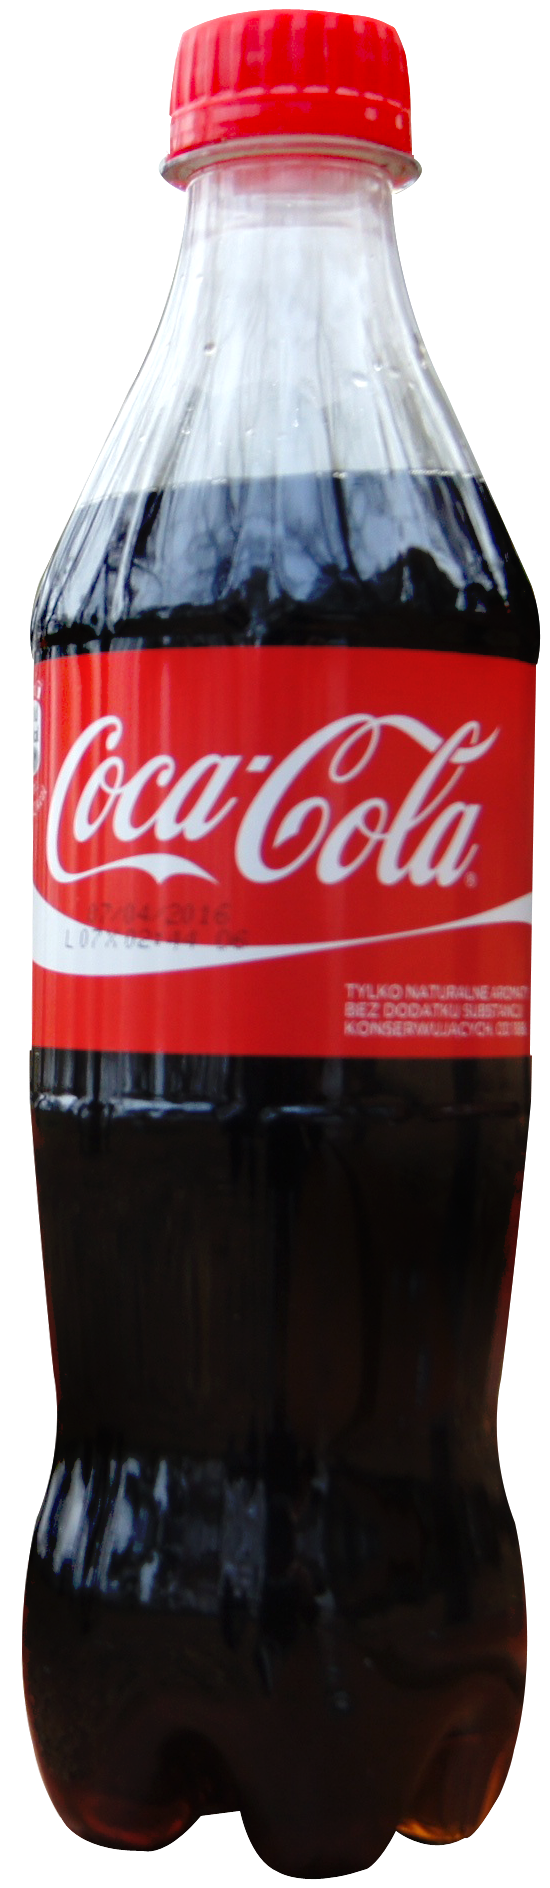 Coca Cola Hd PNG Image